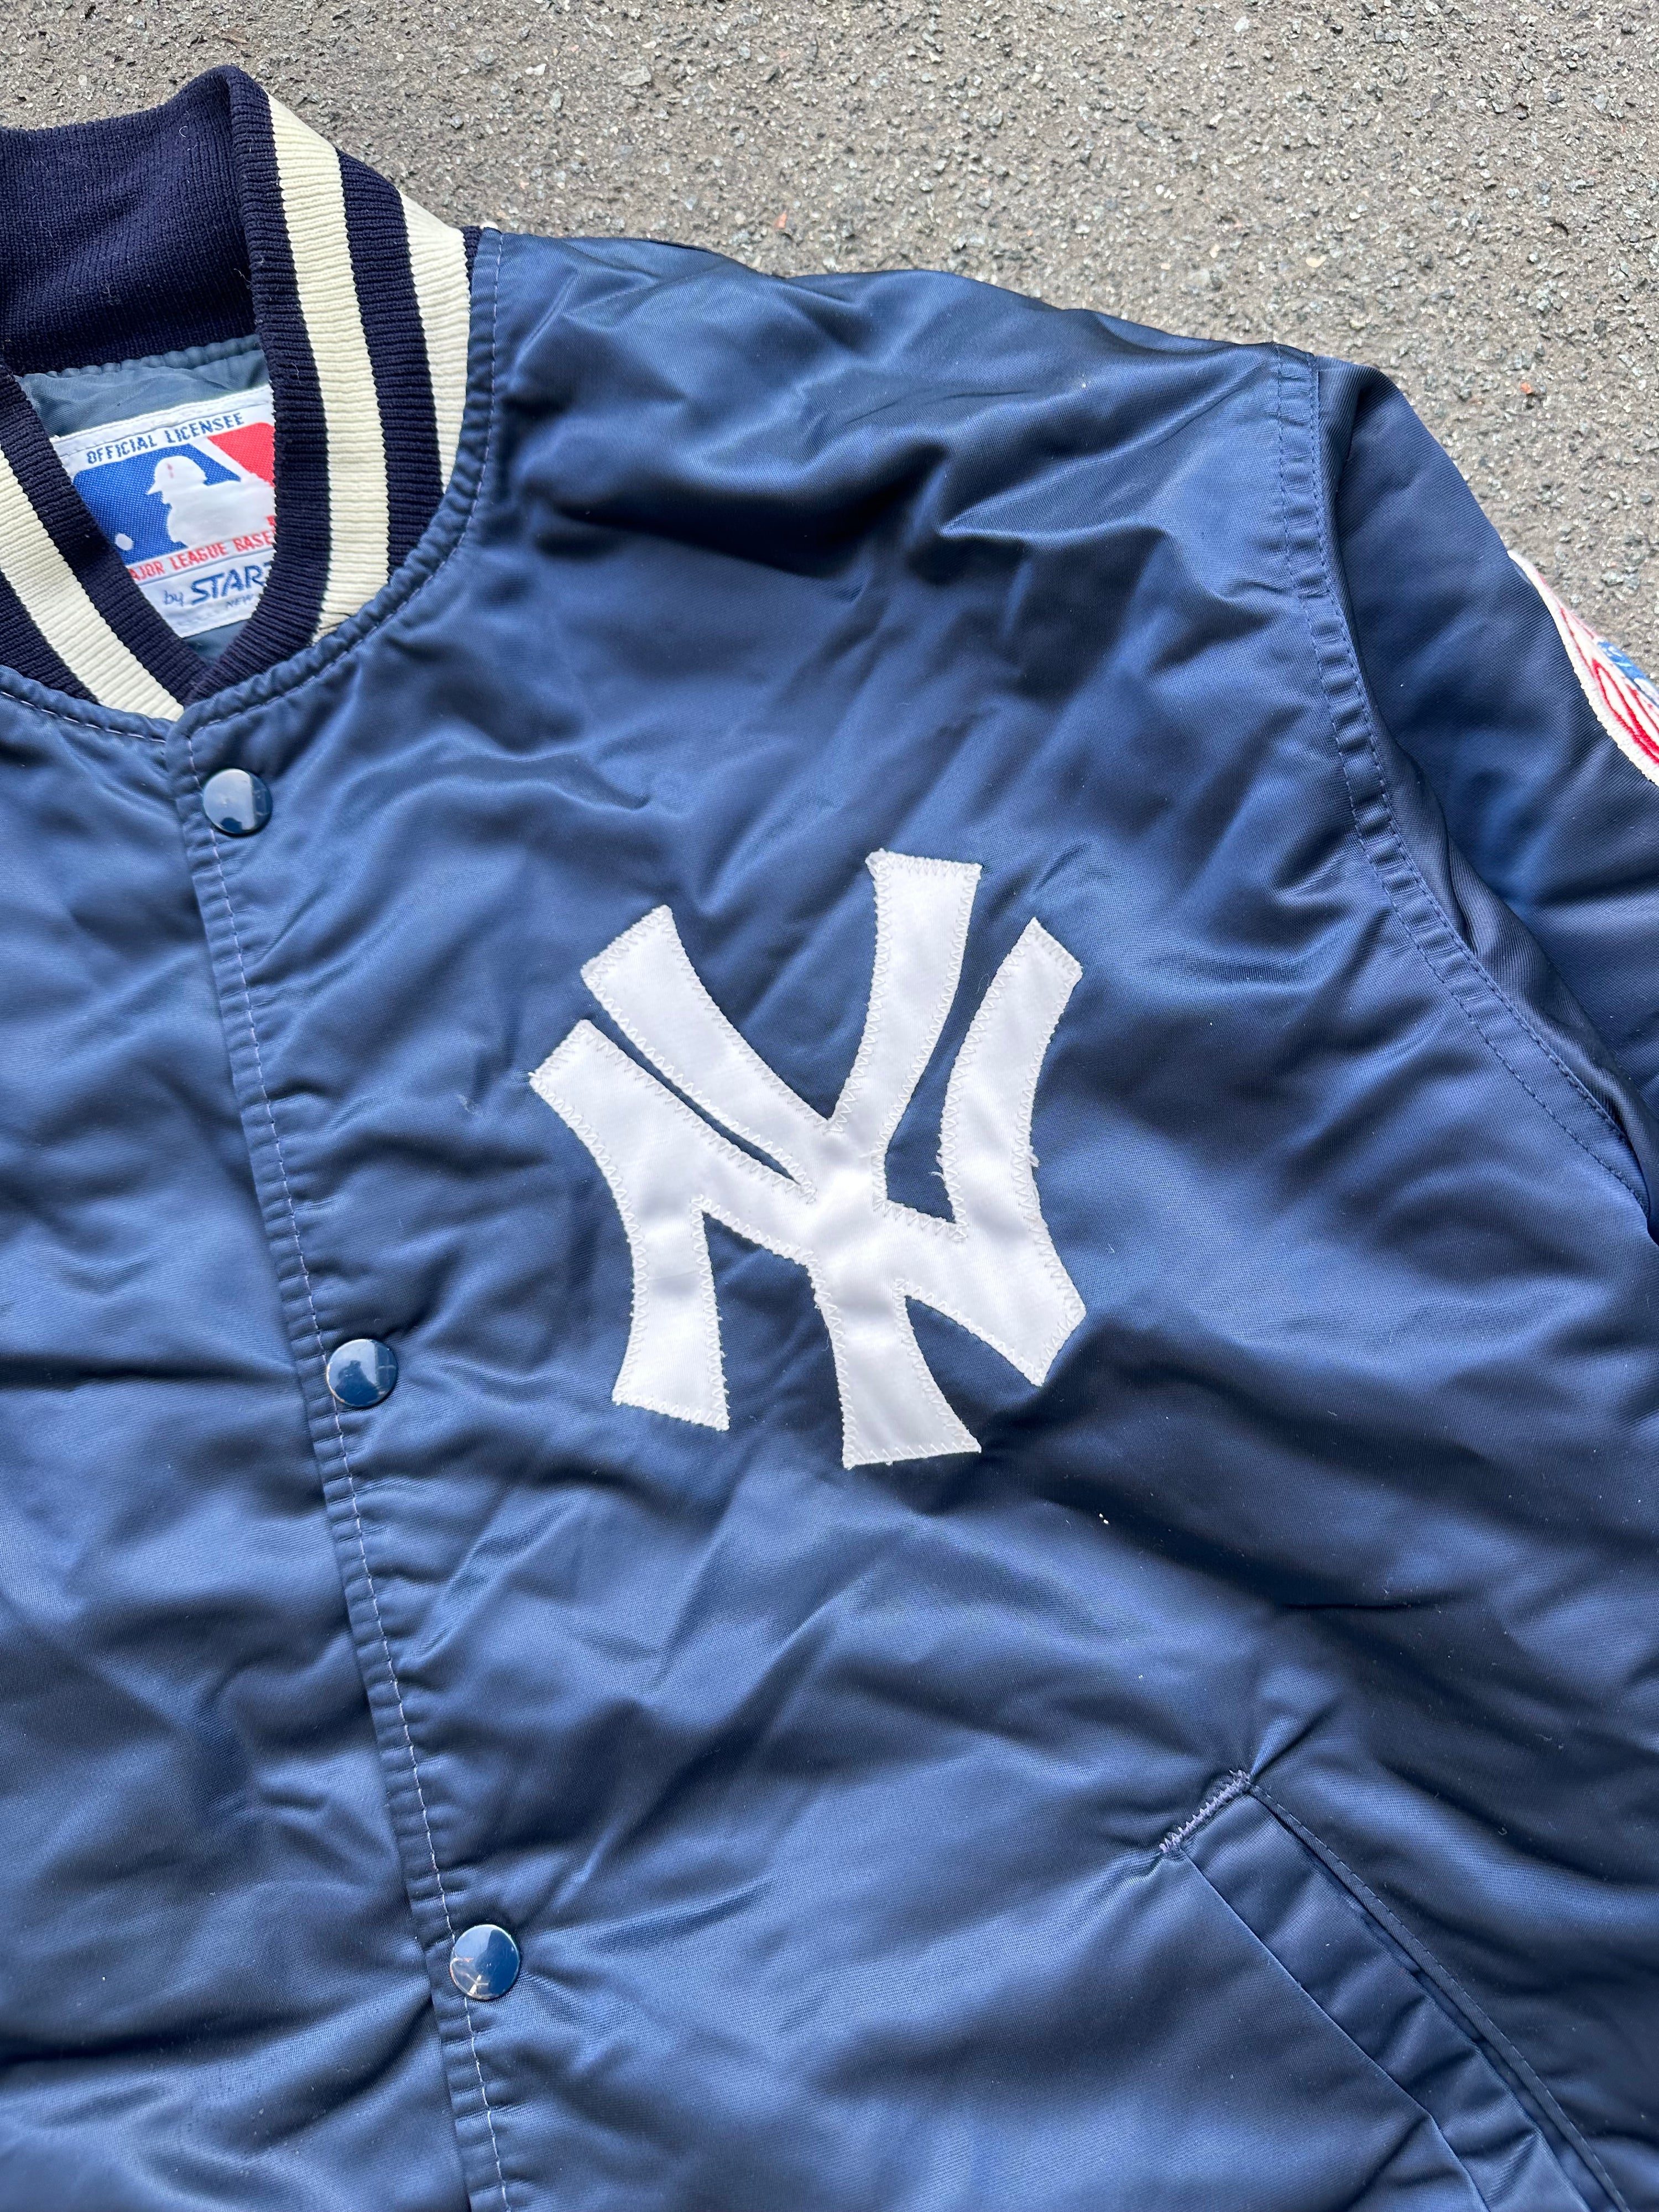 Vintage Starter New York Yankees Collegejacket (L)